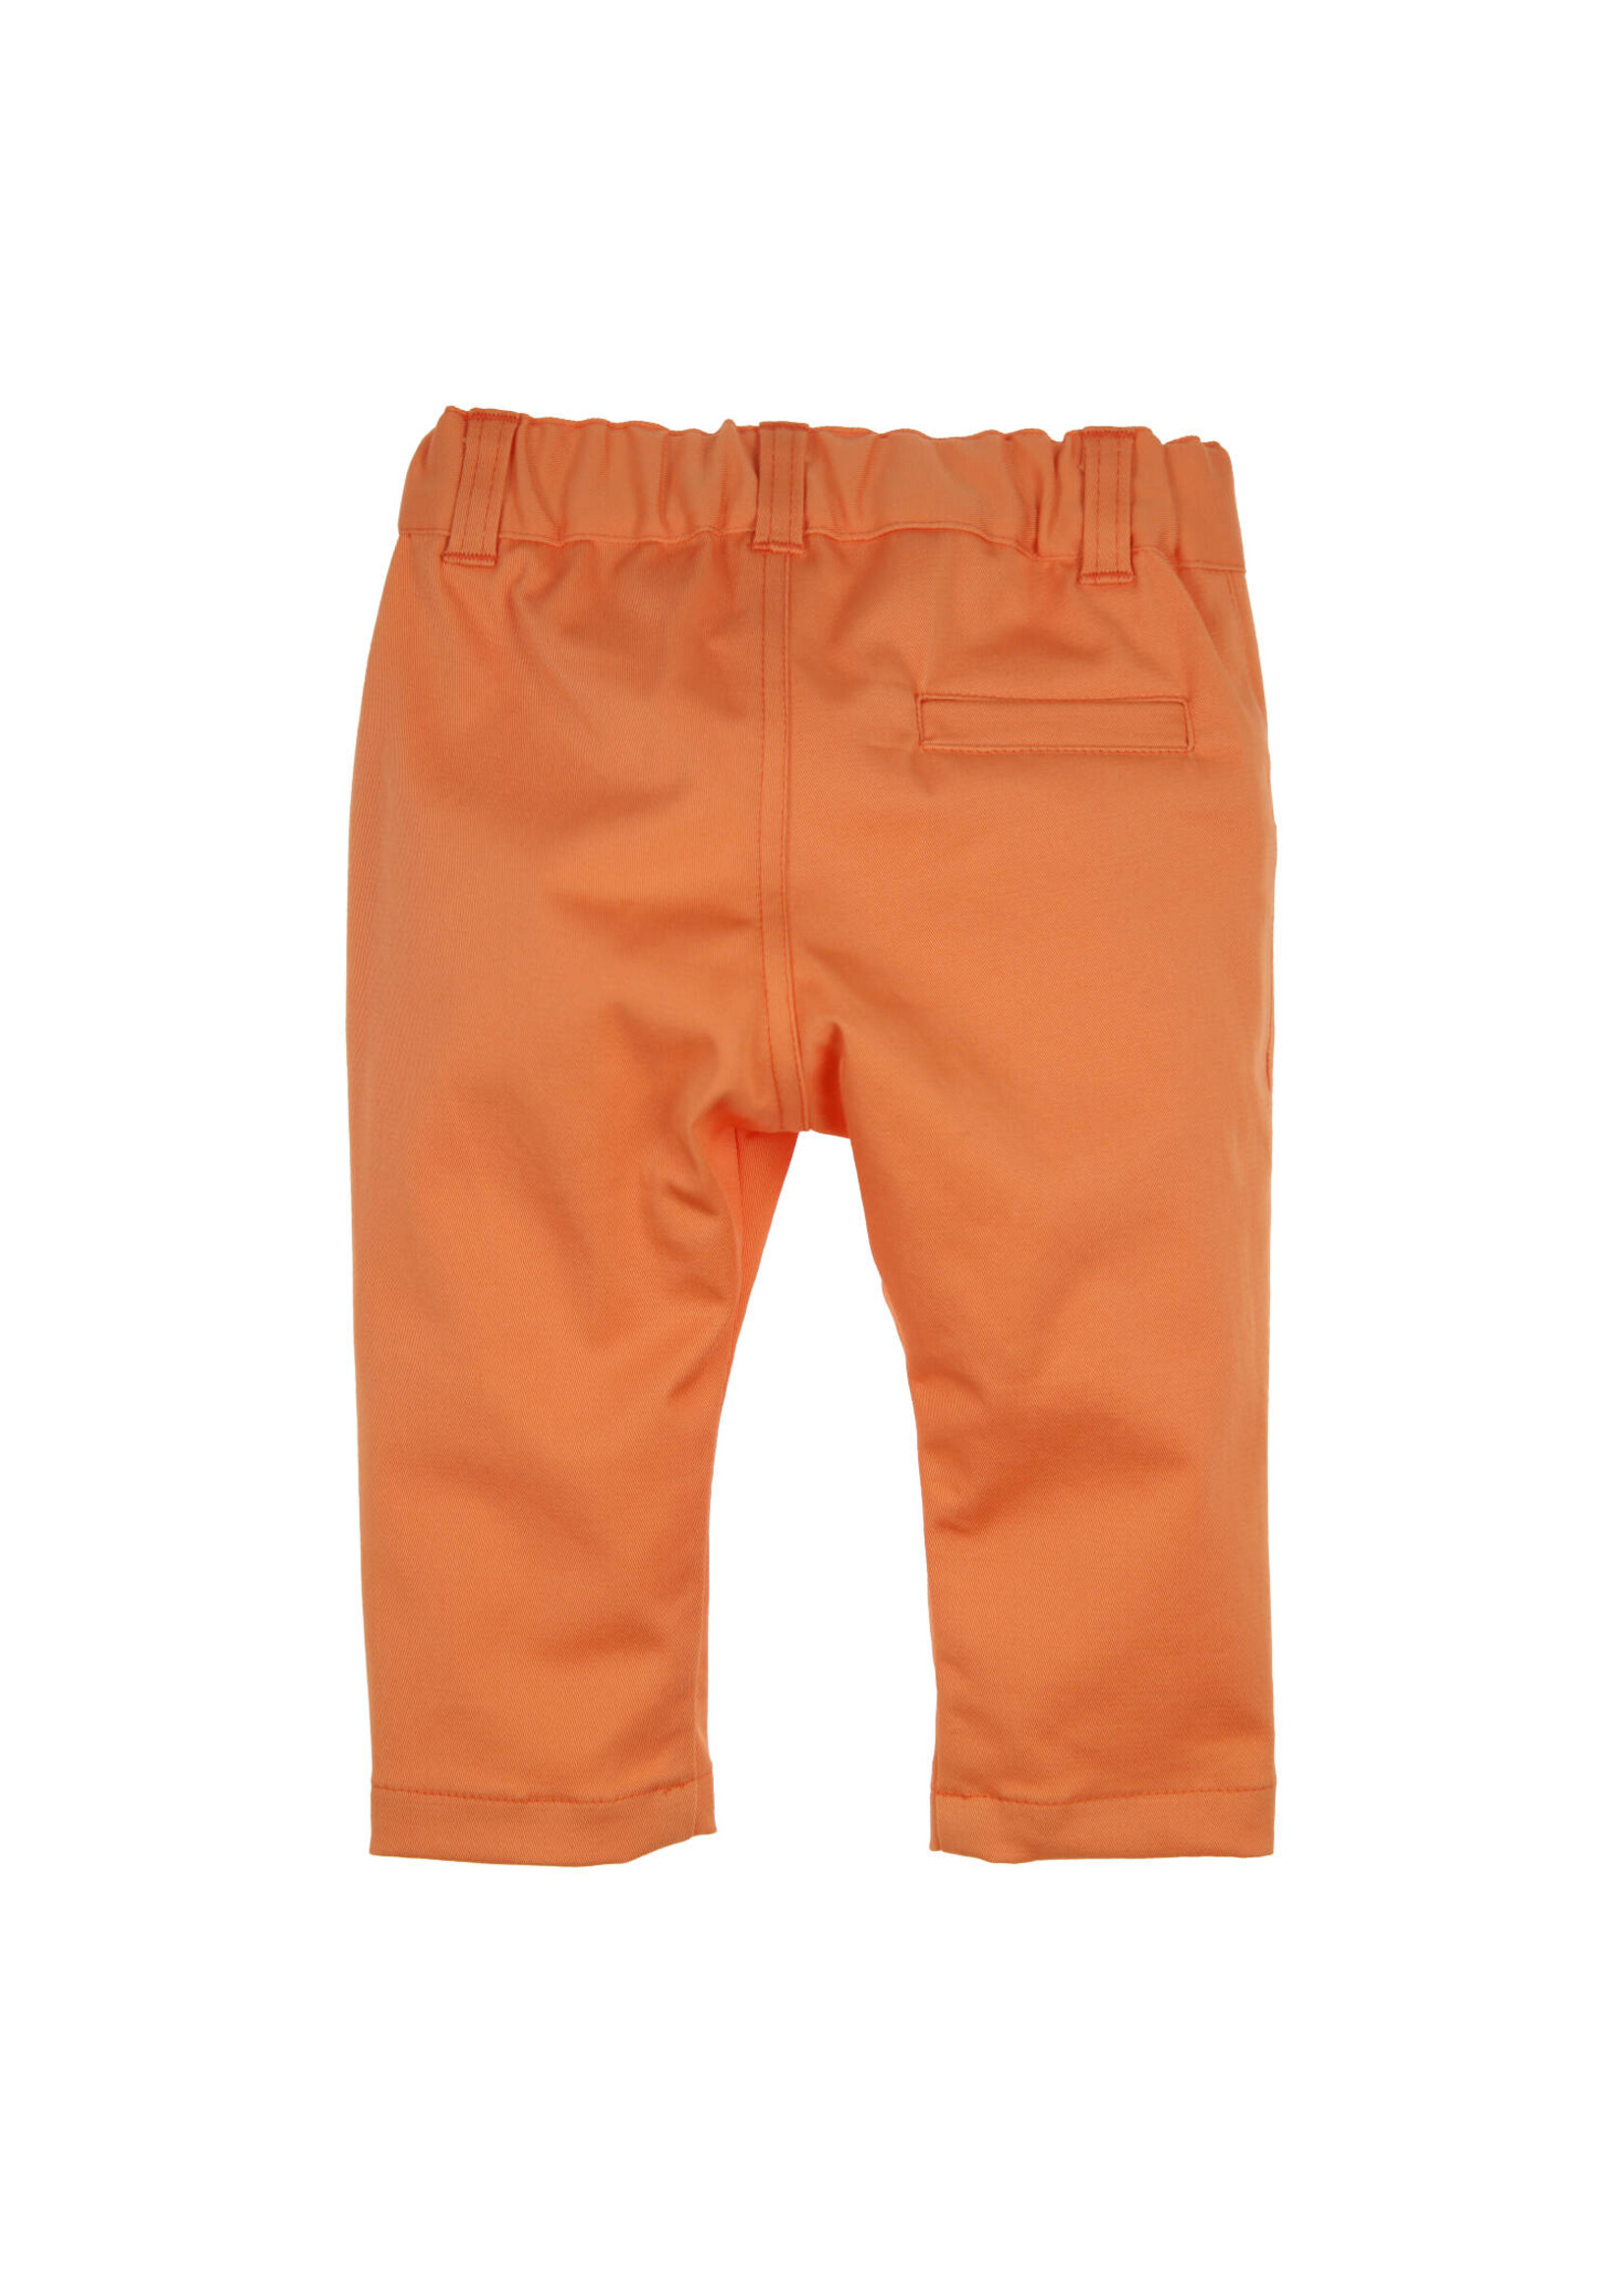 Gymp Boys Trousers Olaf 410-4178-20 Orange